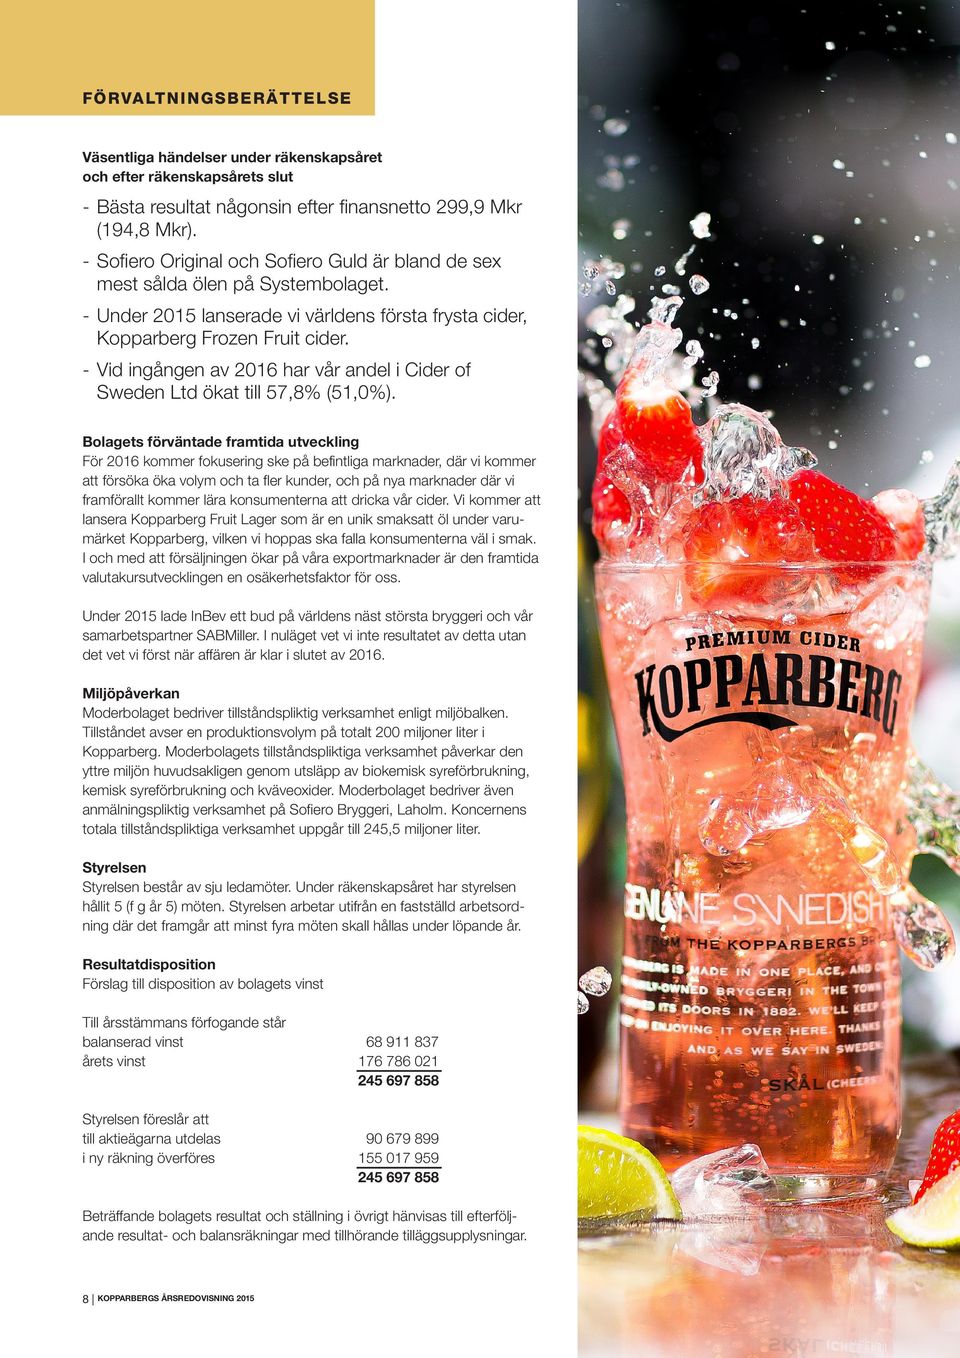 - Vid ingången av 2016 har vår andel i Cider of Sweden Ltd ökat till 57,8% (51,0%).